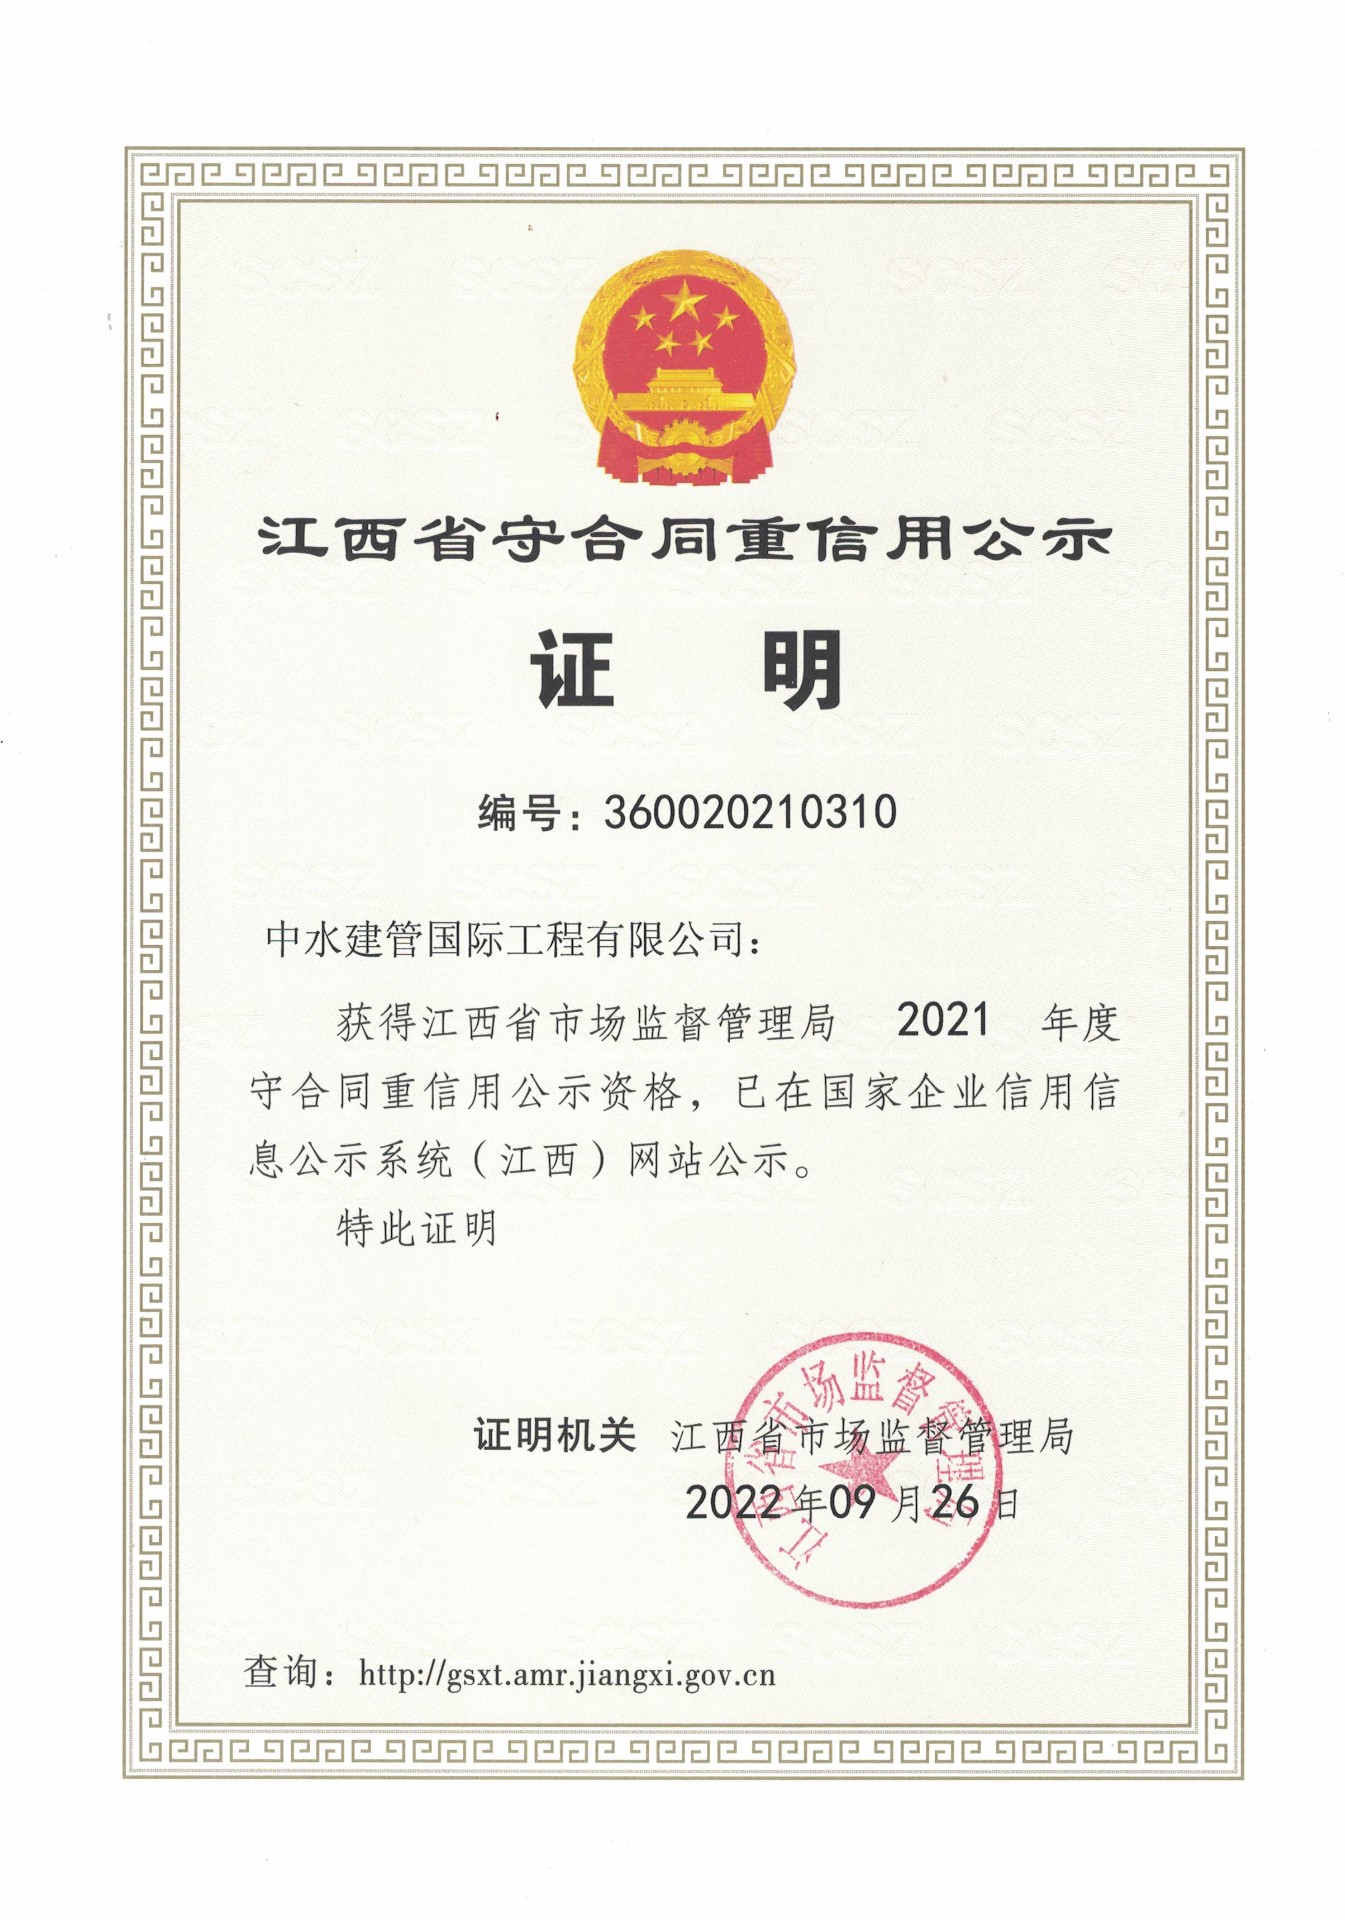 2021年度江西省守合同重信用证书